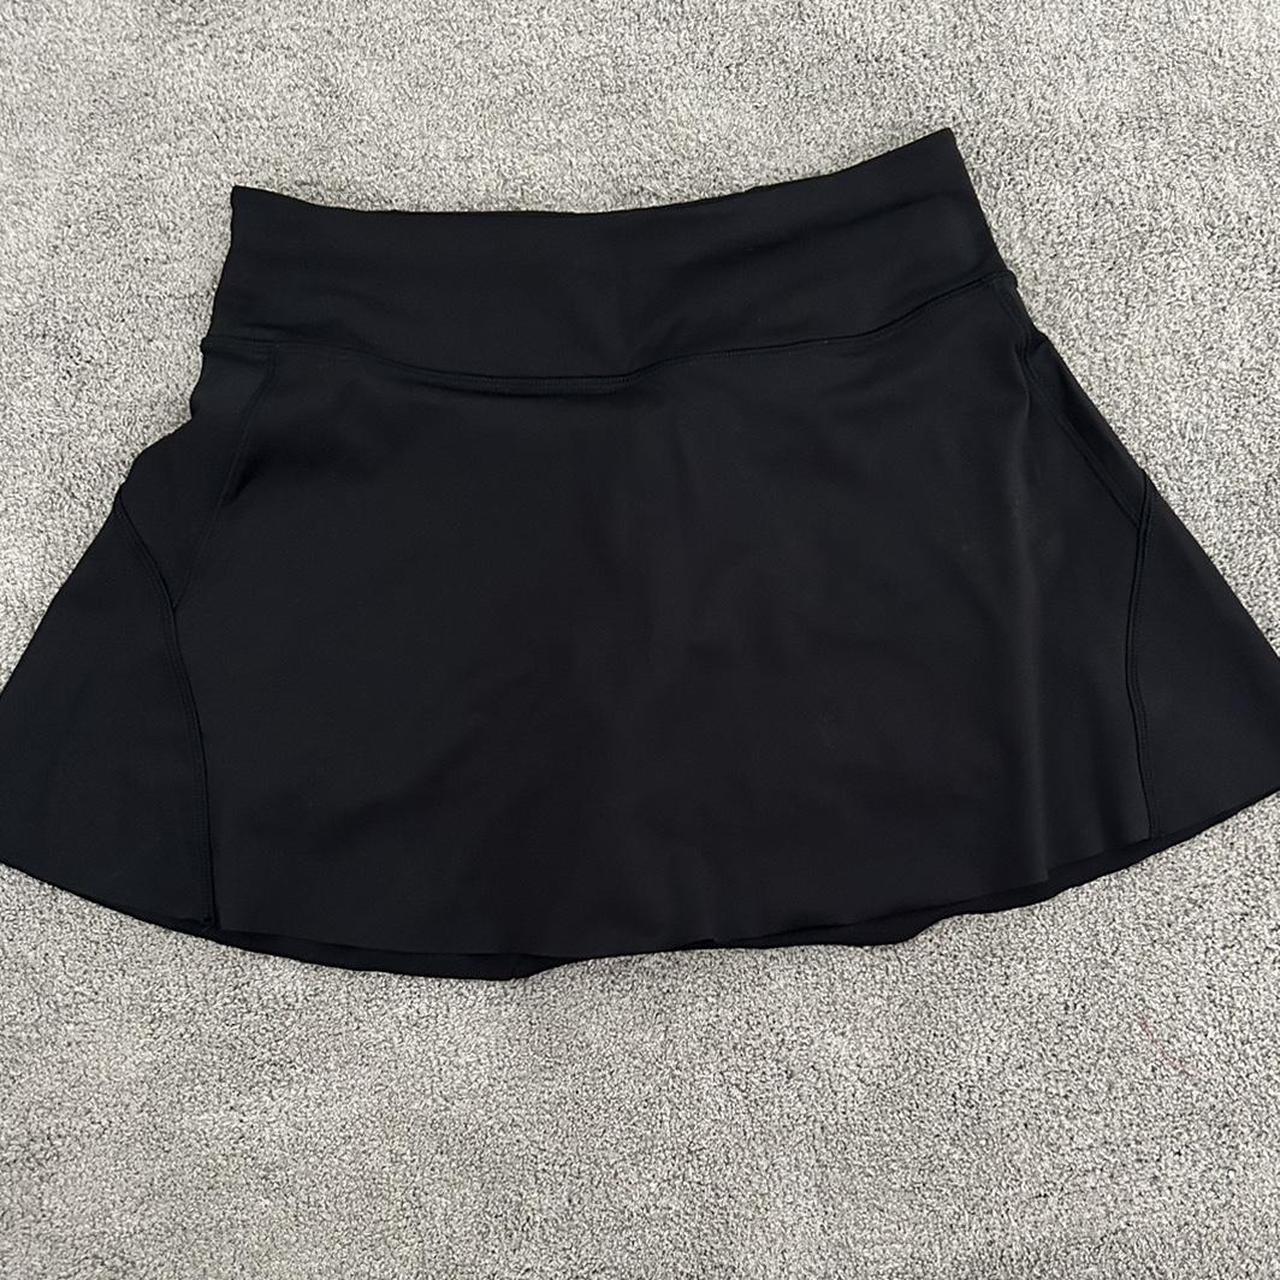 Athleta Women's Skirt